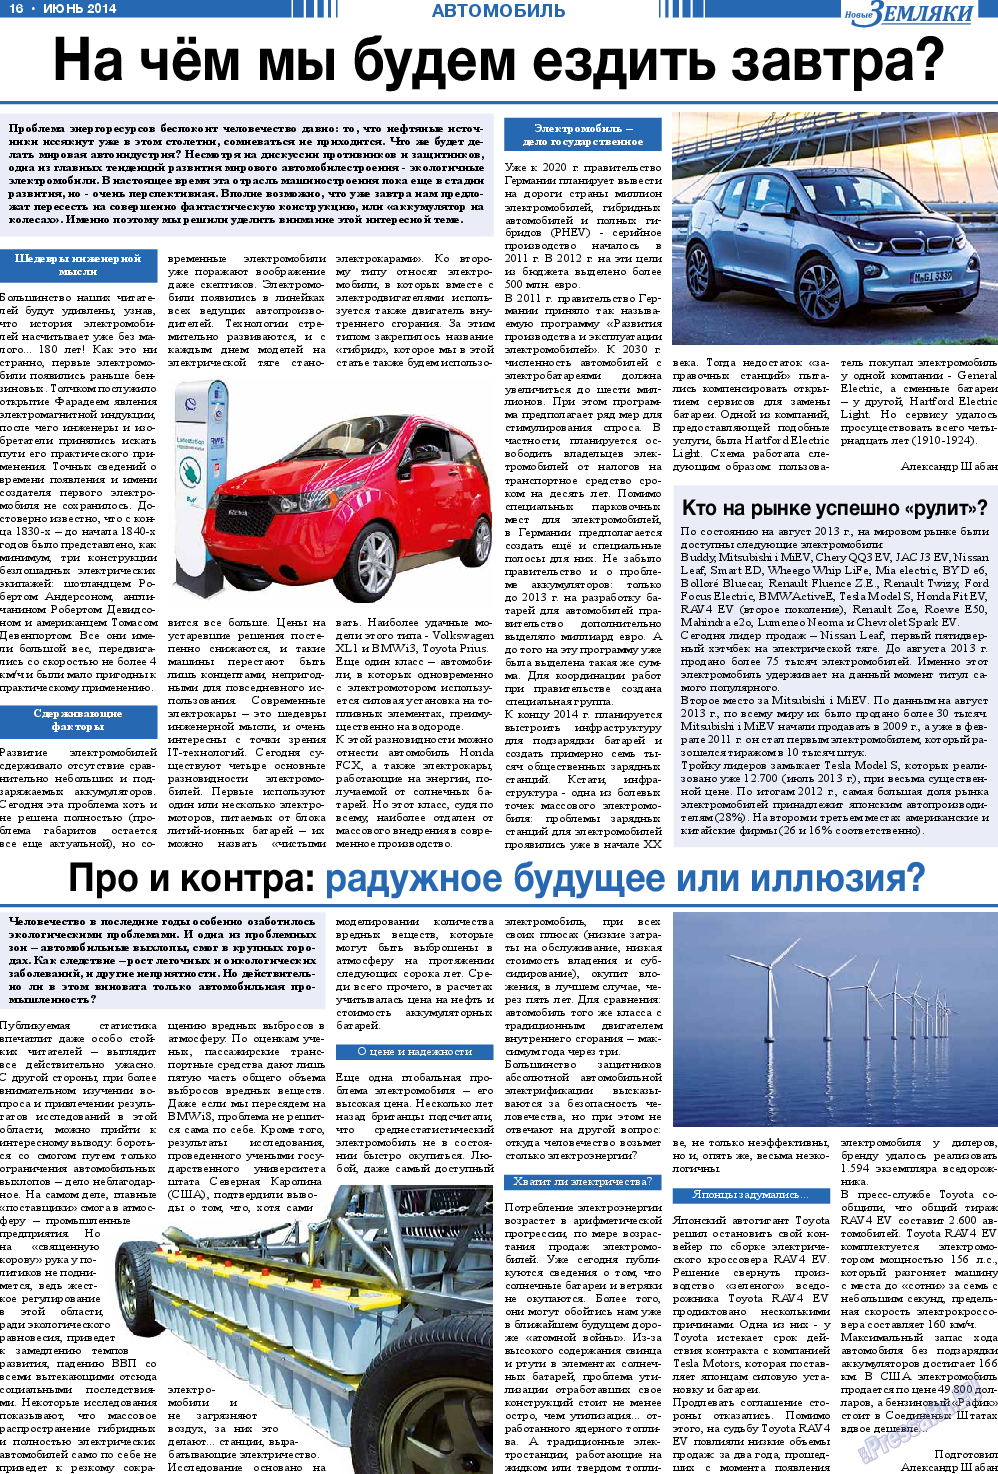 Новые Земляки, газета. 2014 №6 стр.16